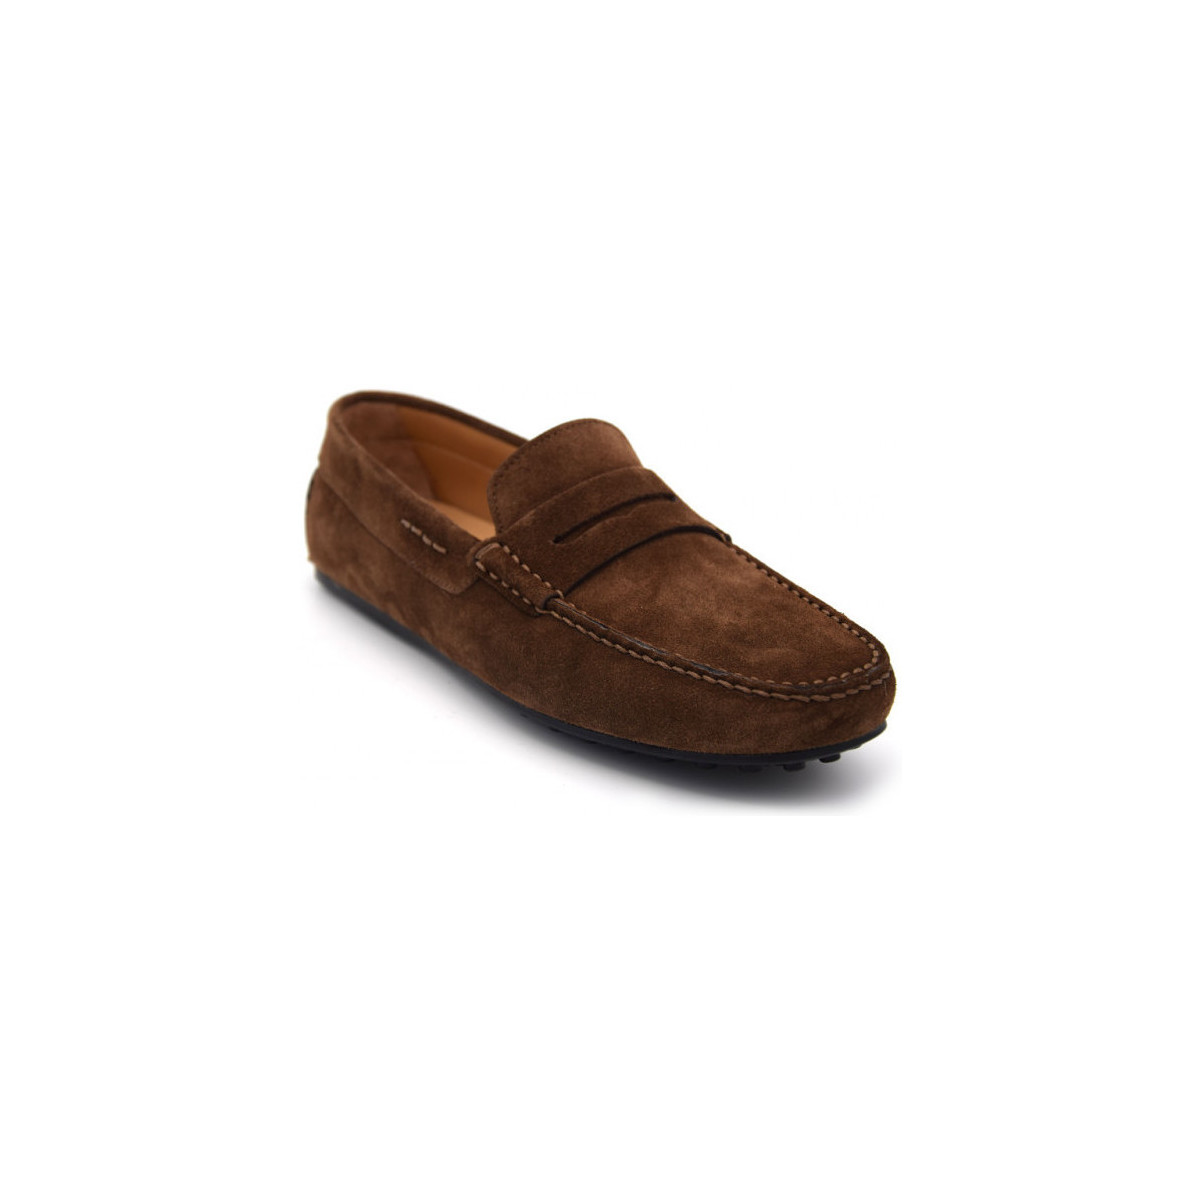 Chaussures Homme République démocratique du Congo 980-25 Marron